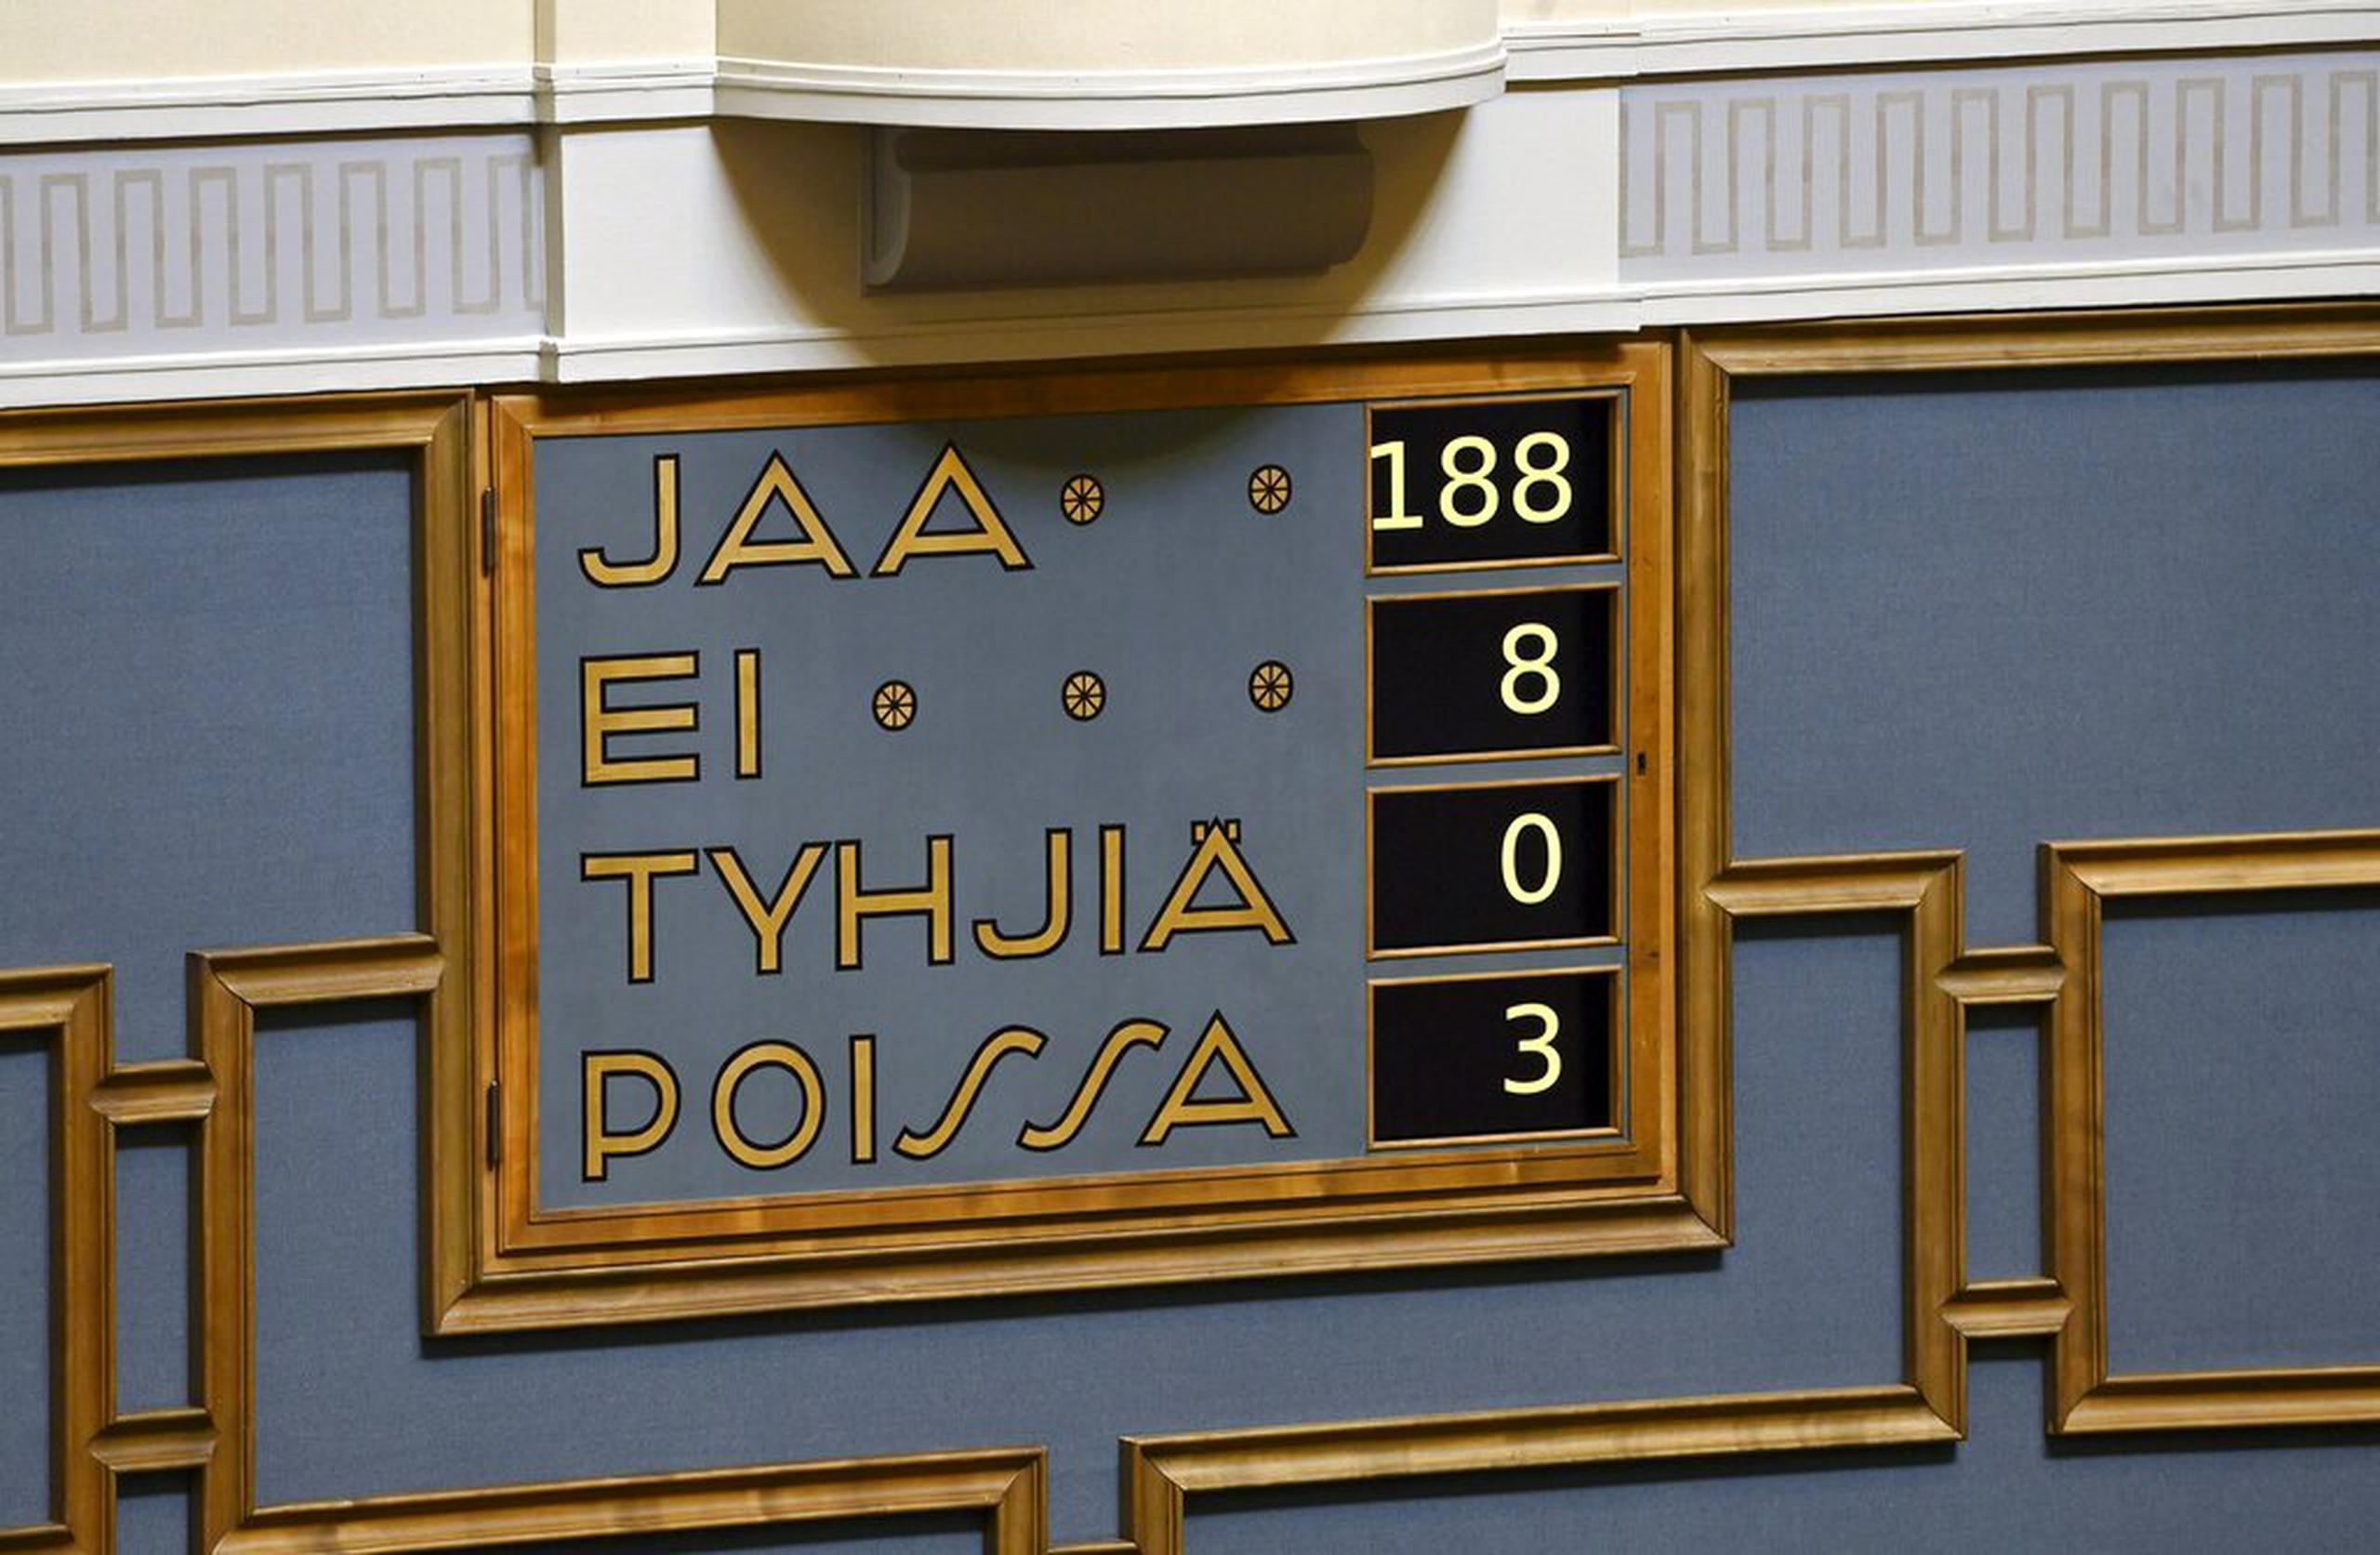 Los resultados de la votación parlamentaria sobre el ingreso de Finlandia a la OTAN: 188 sí, 8 no, 0 nulo y 3 ausentes.